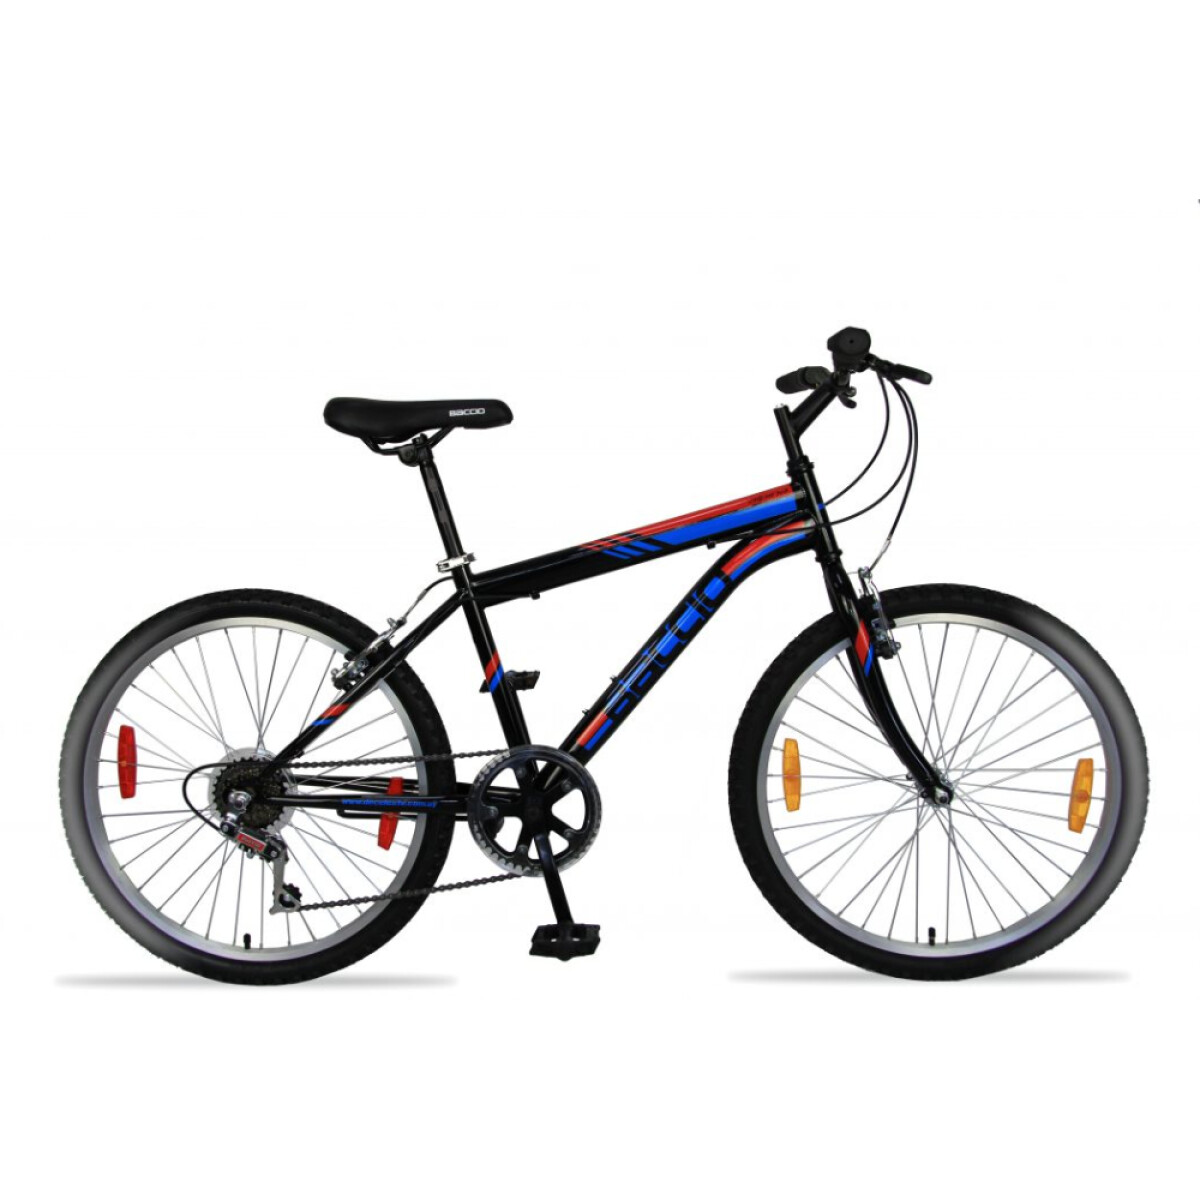 Bicicleta Baccio Alpina Man R24 - Negro y azul 